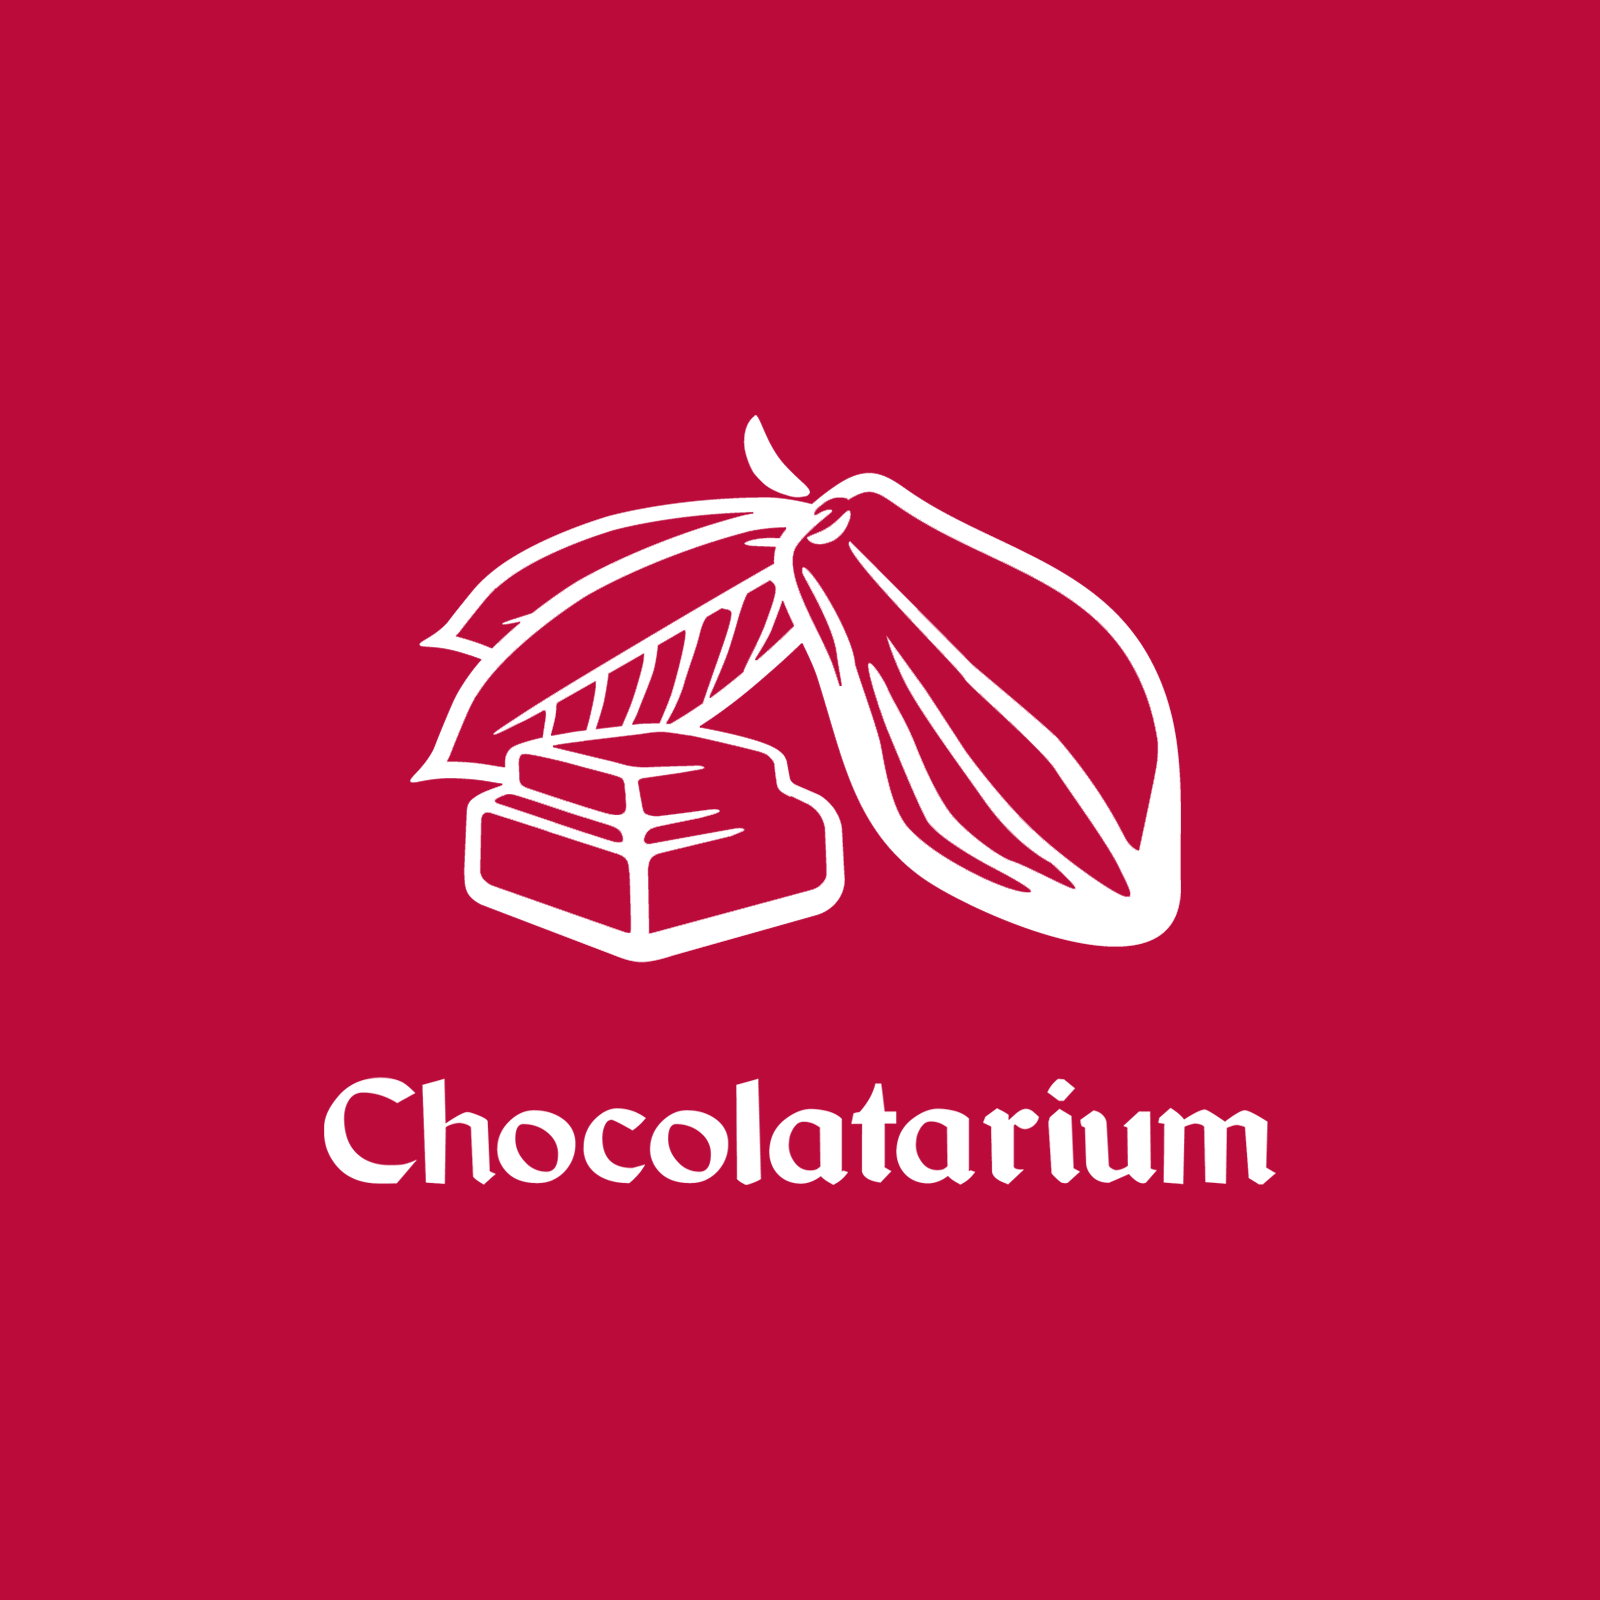 The Chocolatarium logo